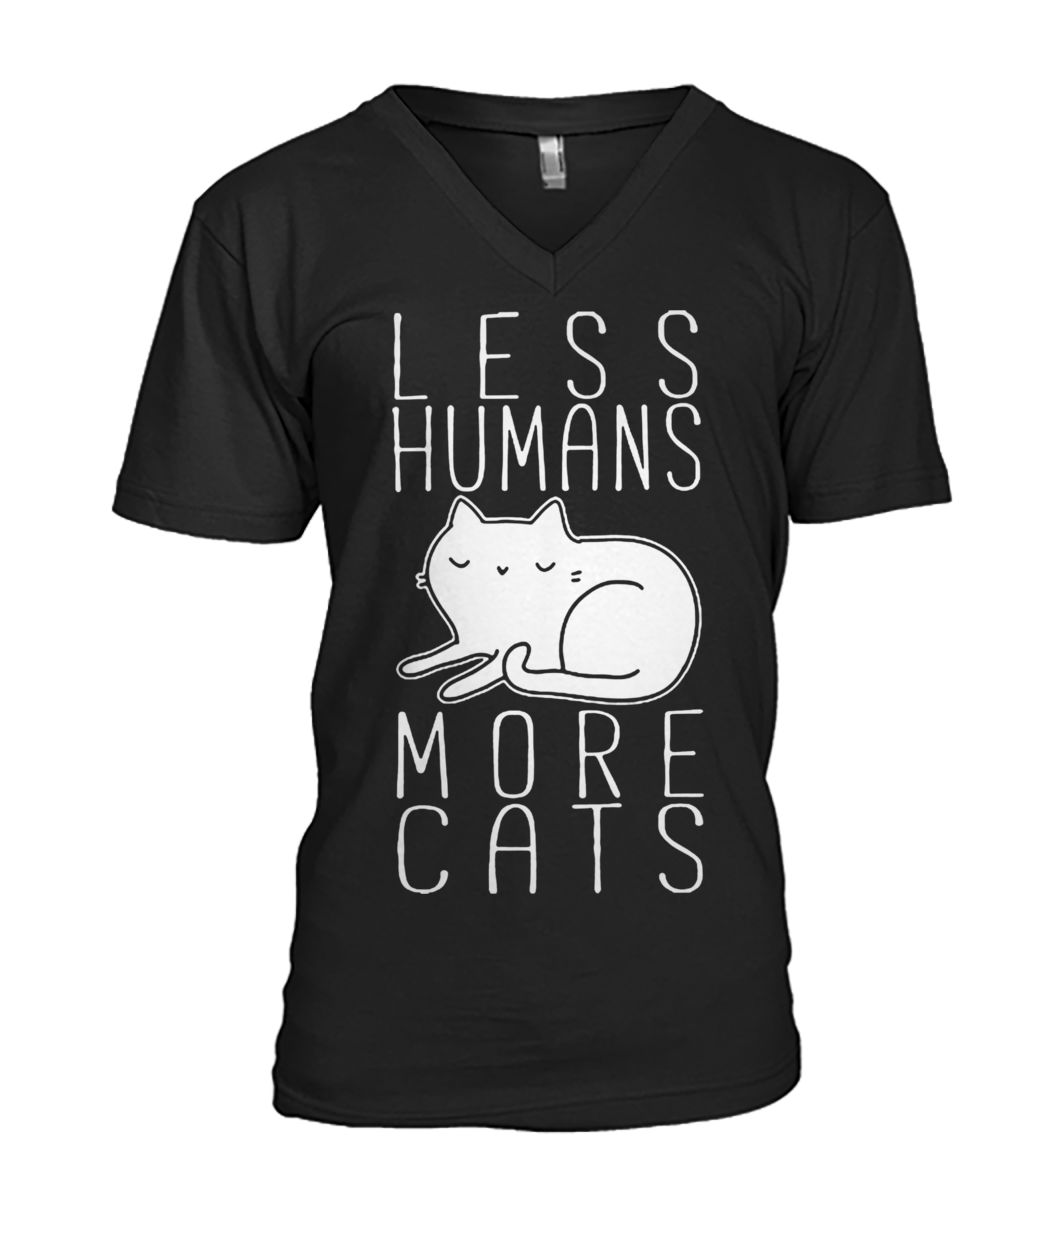 Less humans more cats mens v-neck